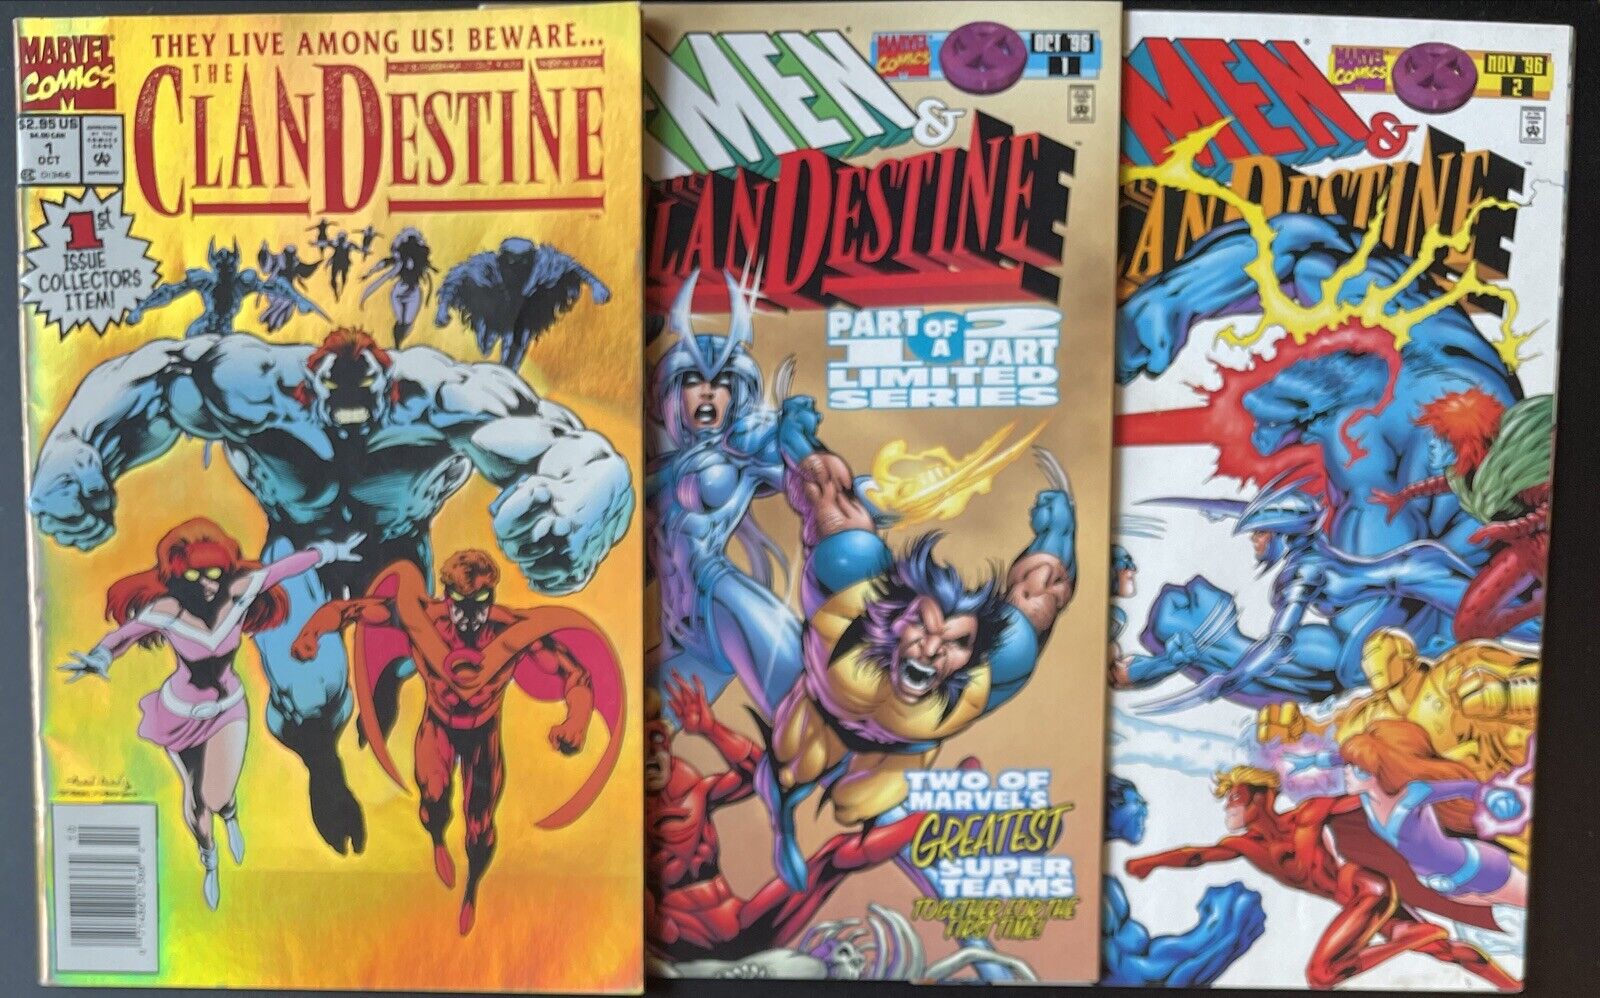 Clandestine #1 + X-Men & Clandestine #1 #2 Complete Set! (Marvel 1994/1996)